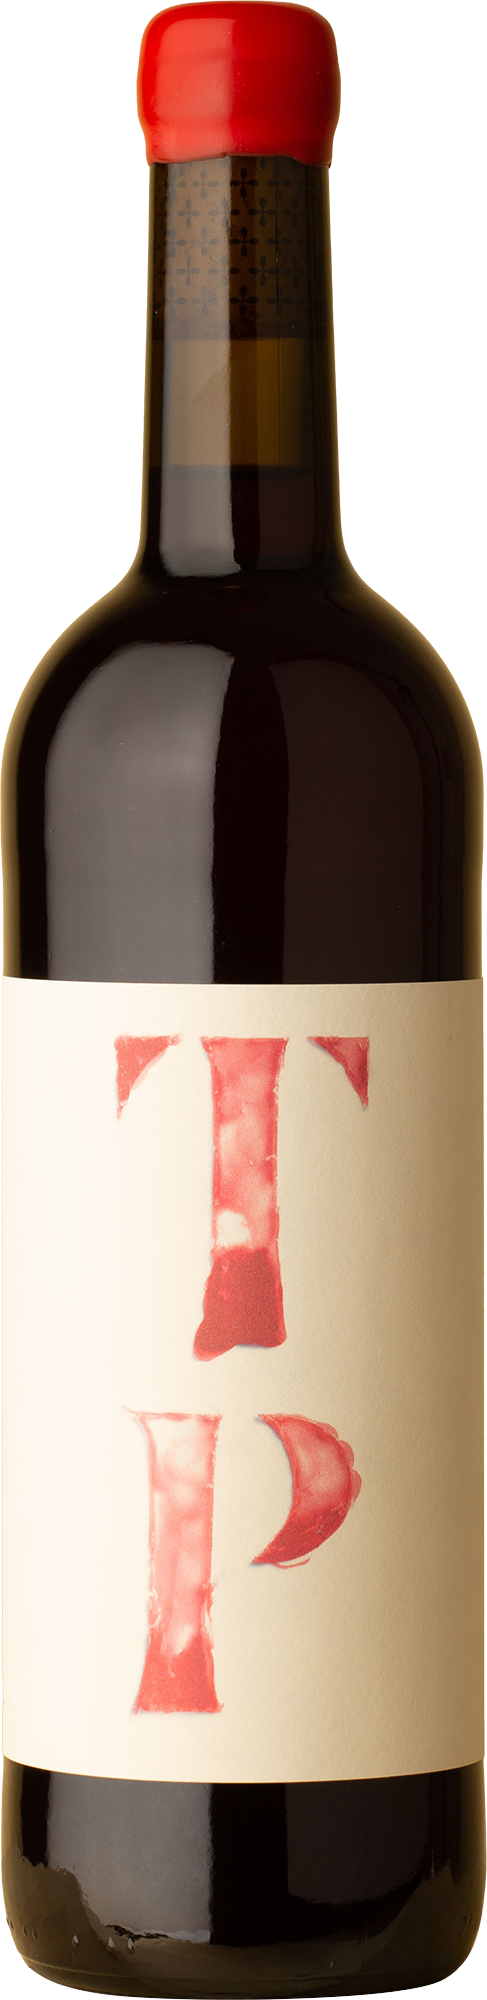 Partida Creus - TP Trepat 2019 Red Wine